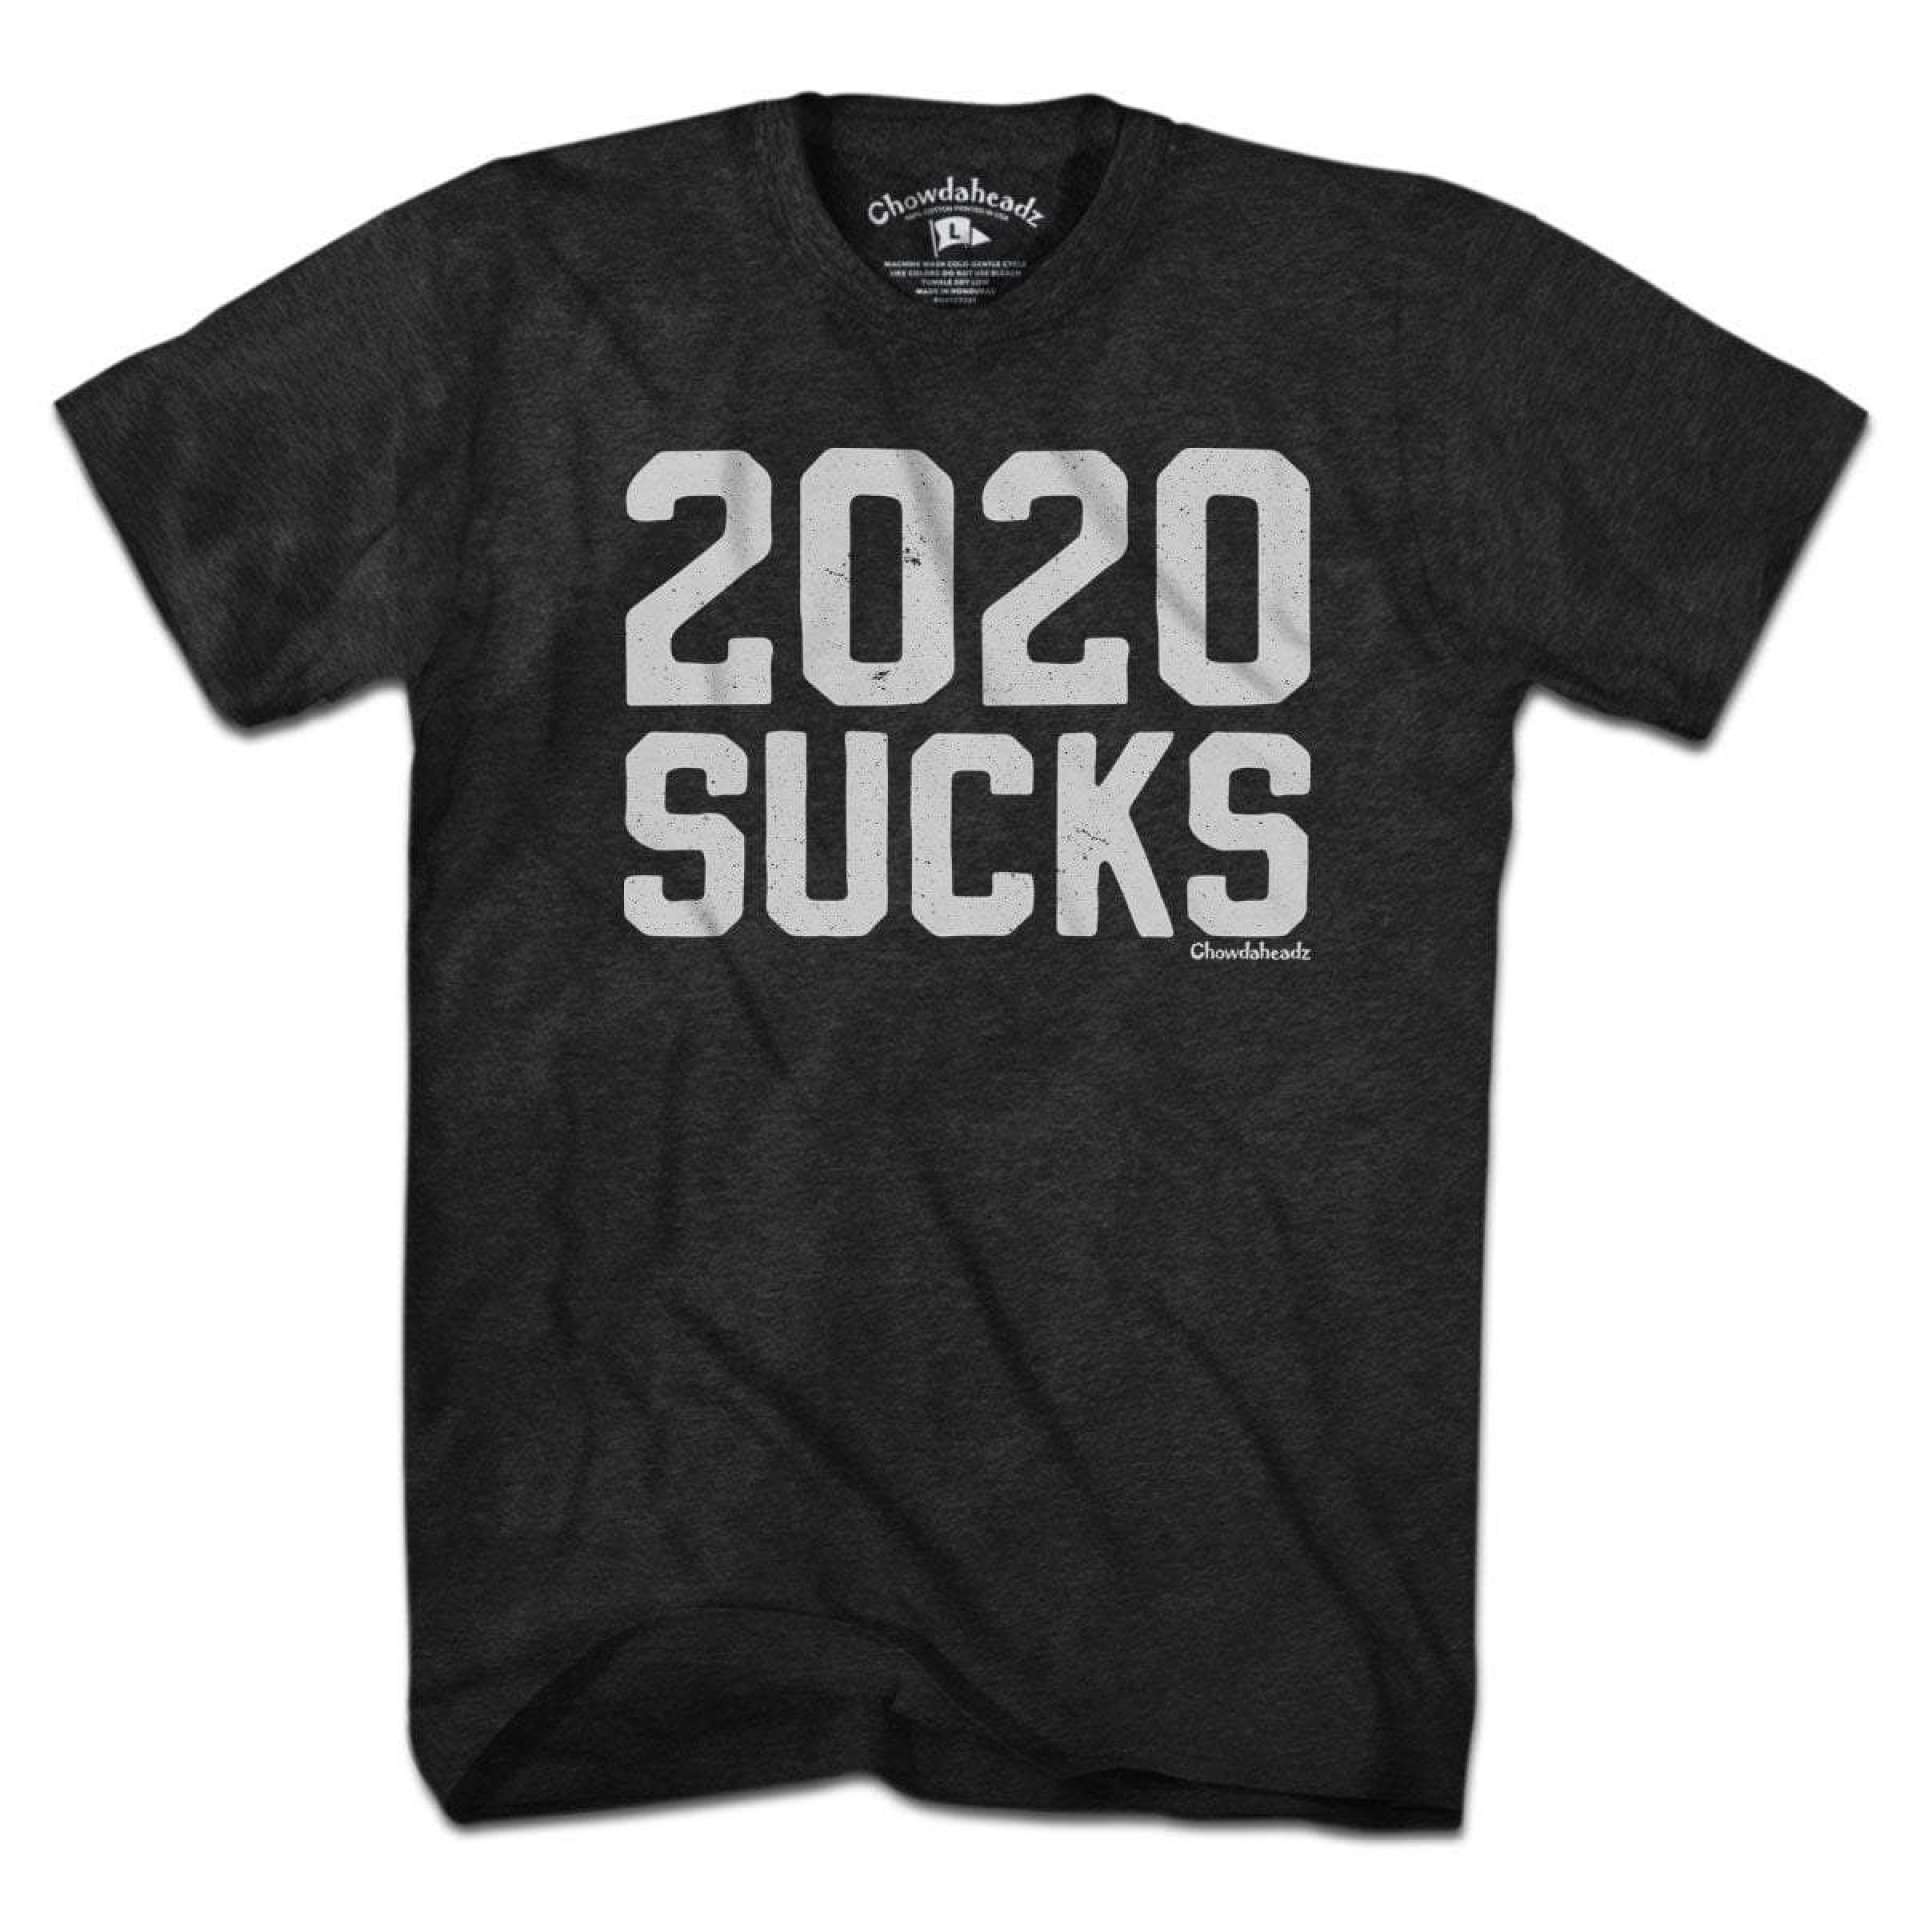 Souvenir novaiorquino: 2020 Sucks (Foto: divulgação)